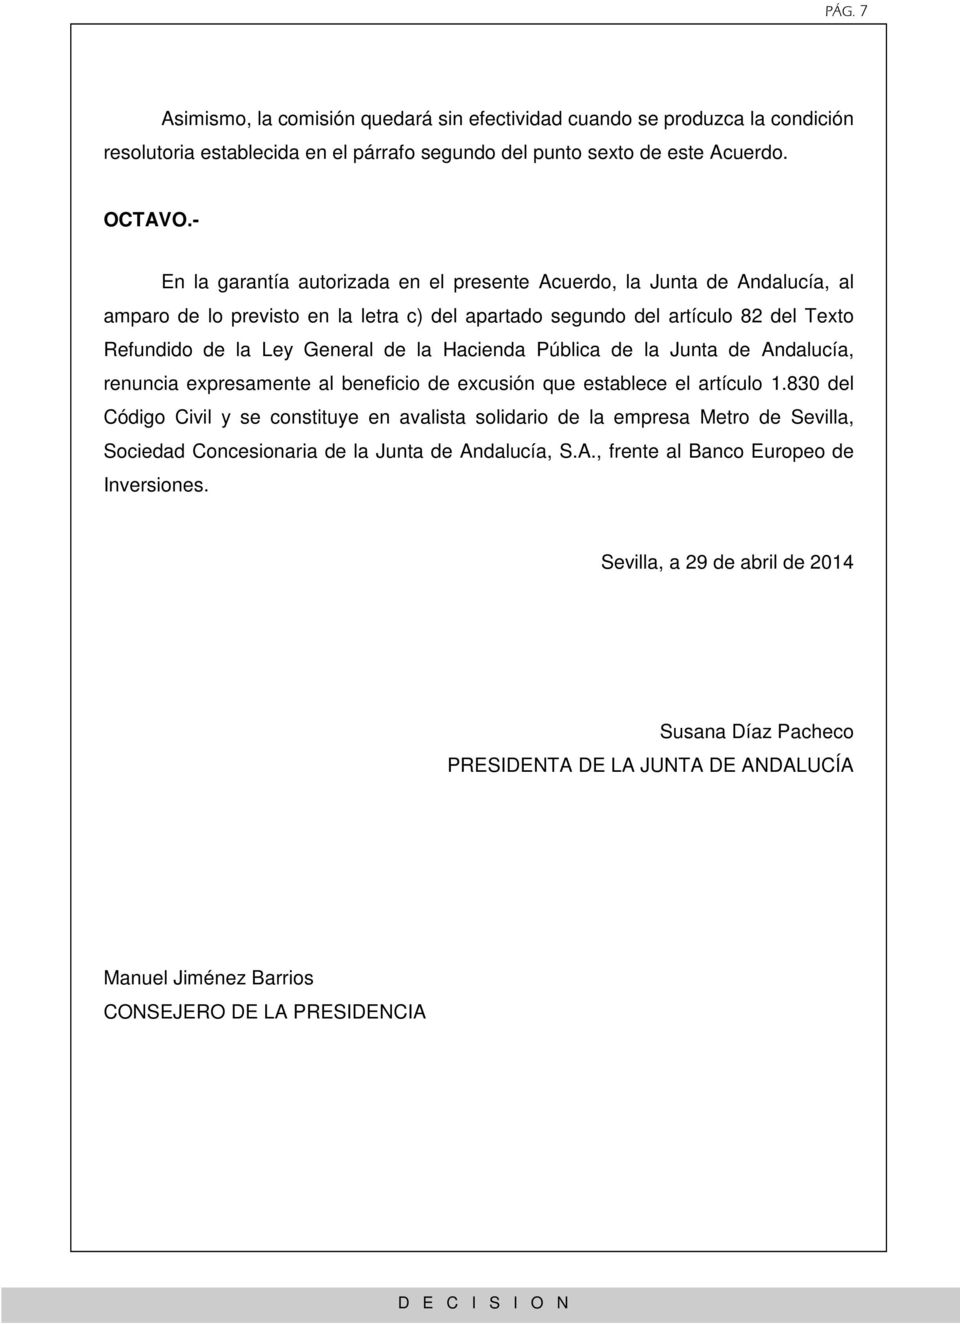 Hacienda Pública de la Junta de Andalucía, renuncia expresamente al beneficio de excusión que establece el artículo 1.